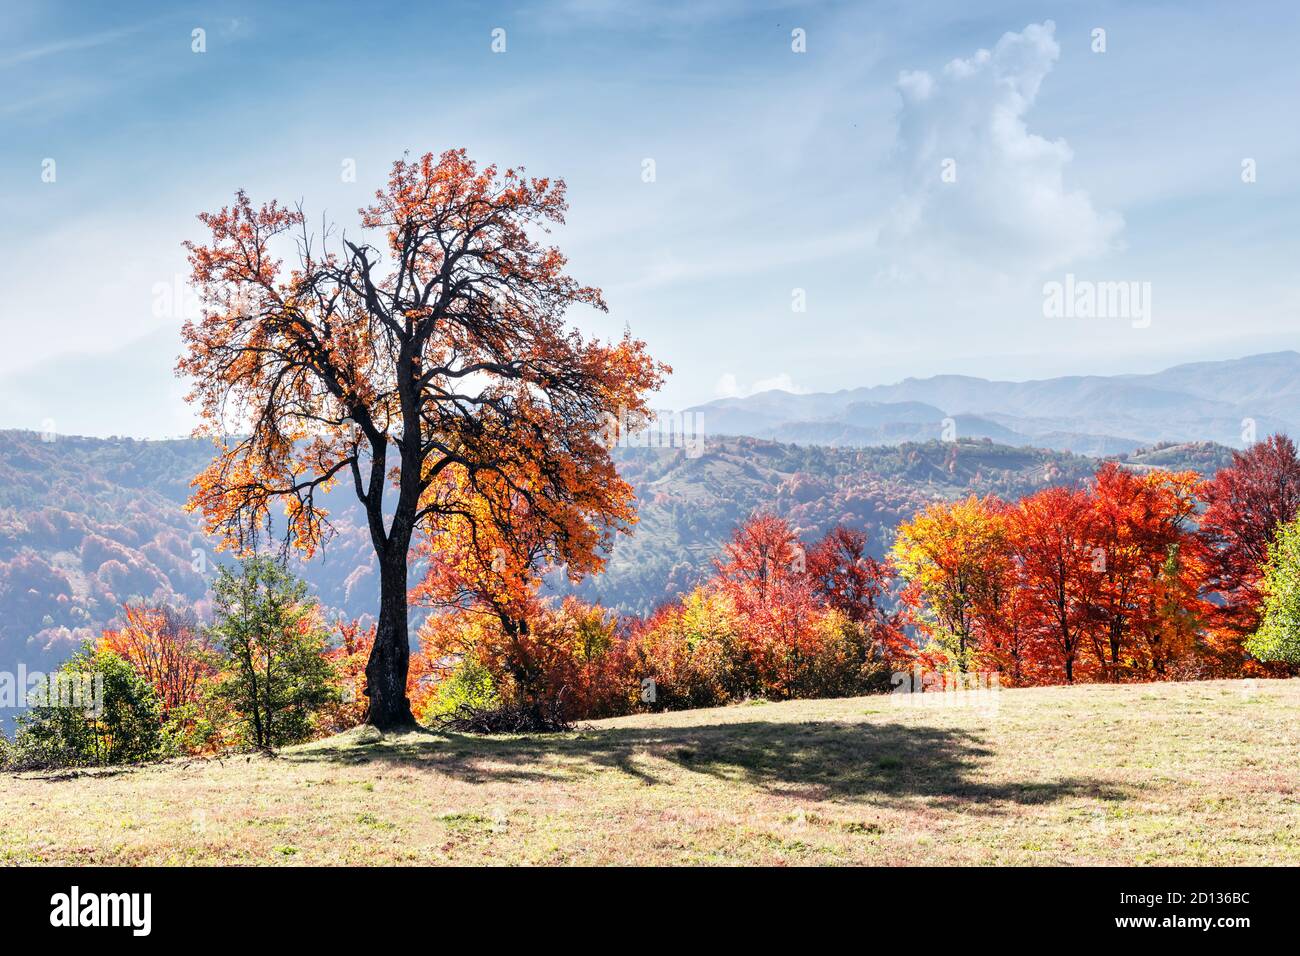 Maestoso albero con foglie d'arancio nella valle di montagna d'autunno. Scenografia colorata e suggestiva. Carpazi, Ucraina. Fotografia di paesaggio Foto Stock